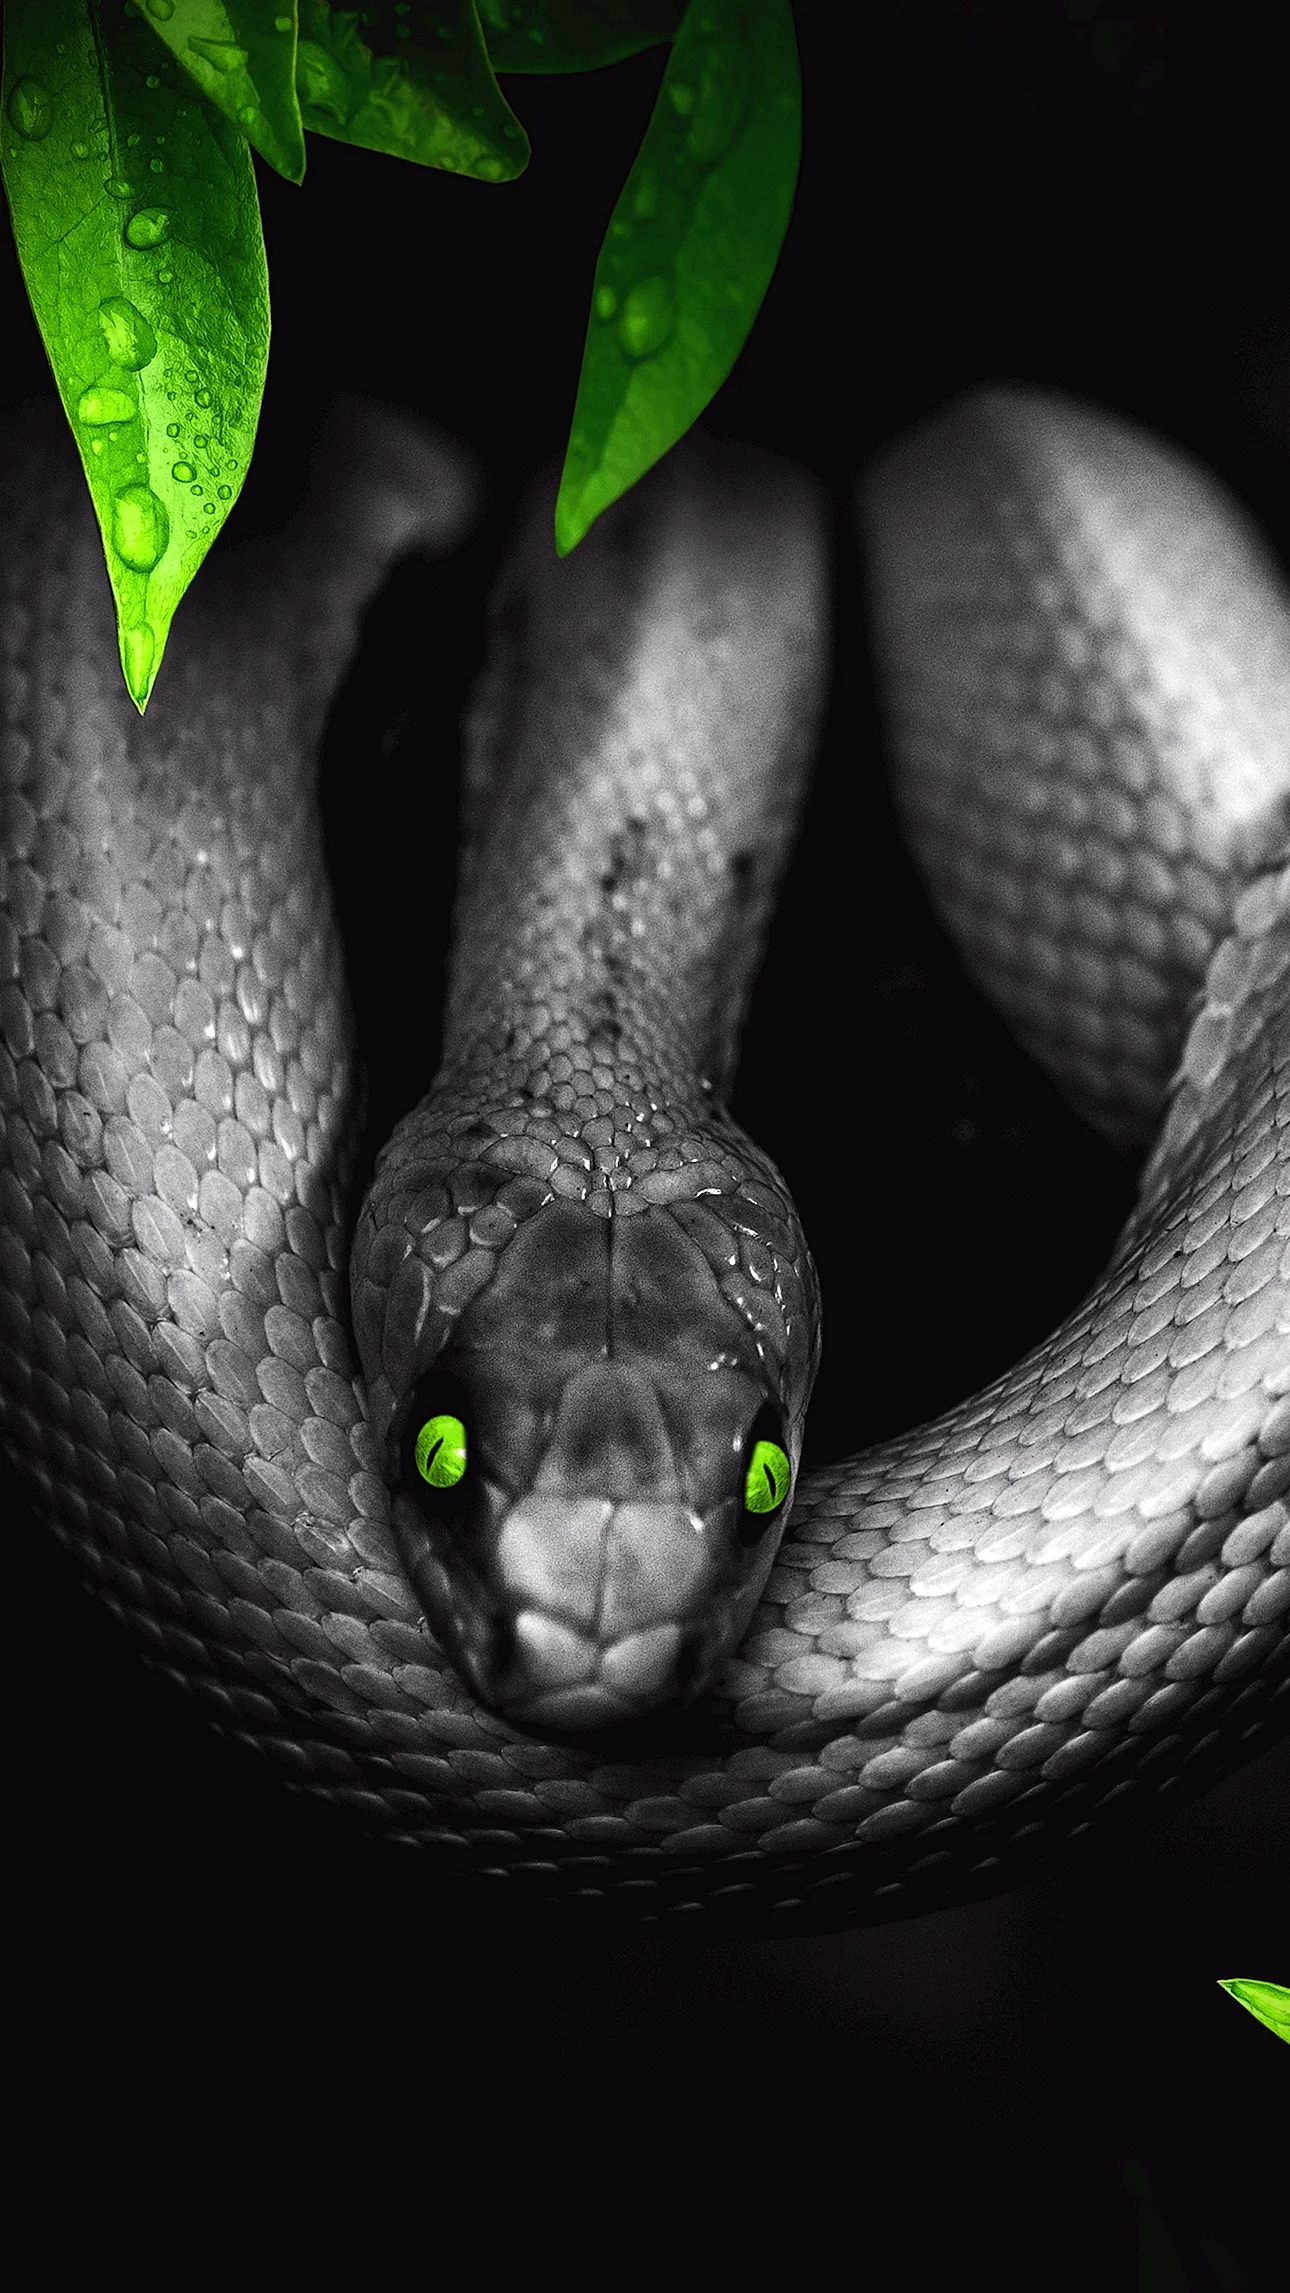 Venomous Snake Wallpaper For iPhone